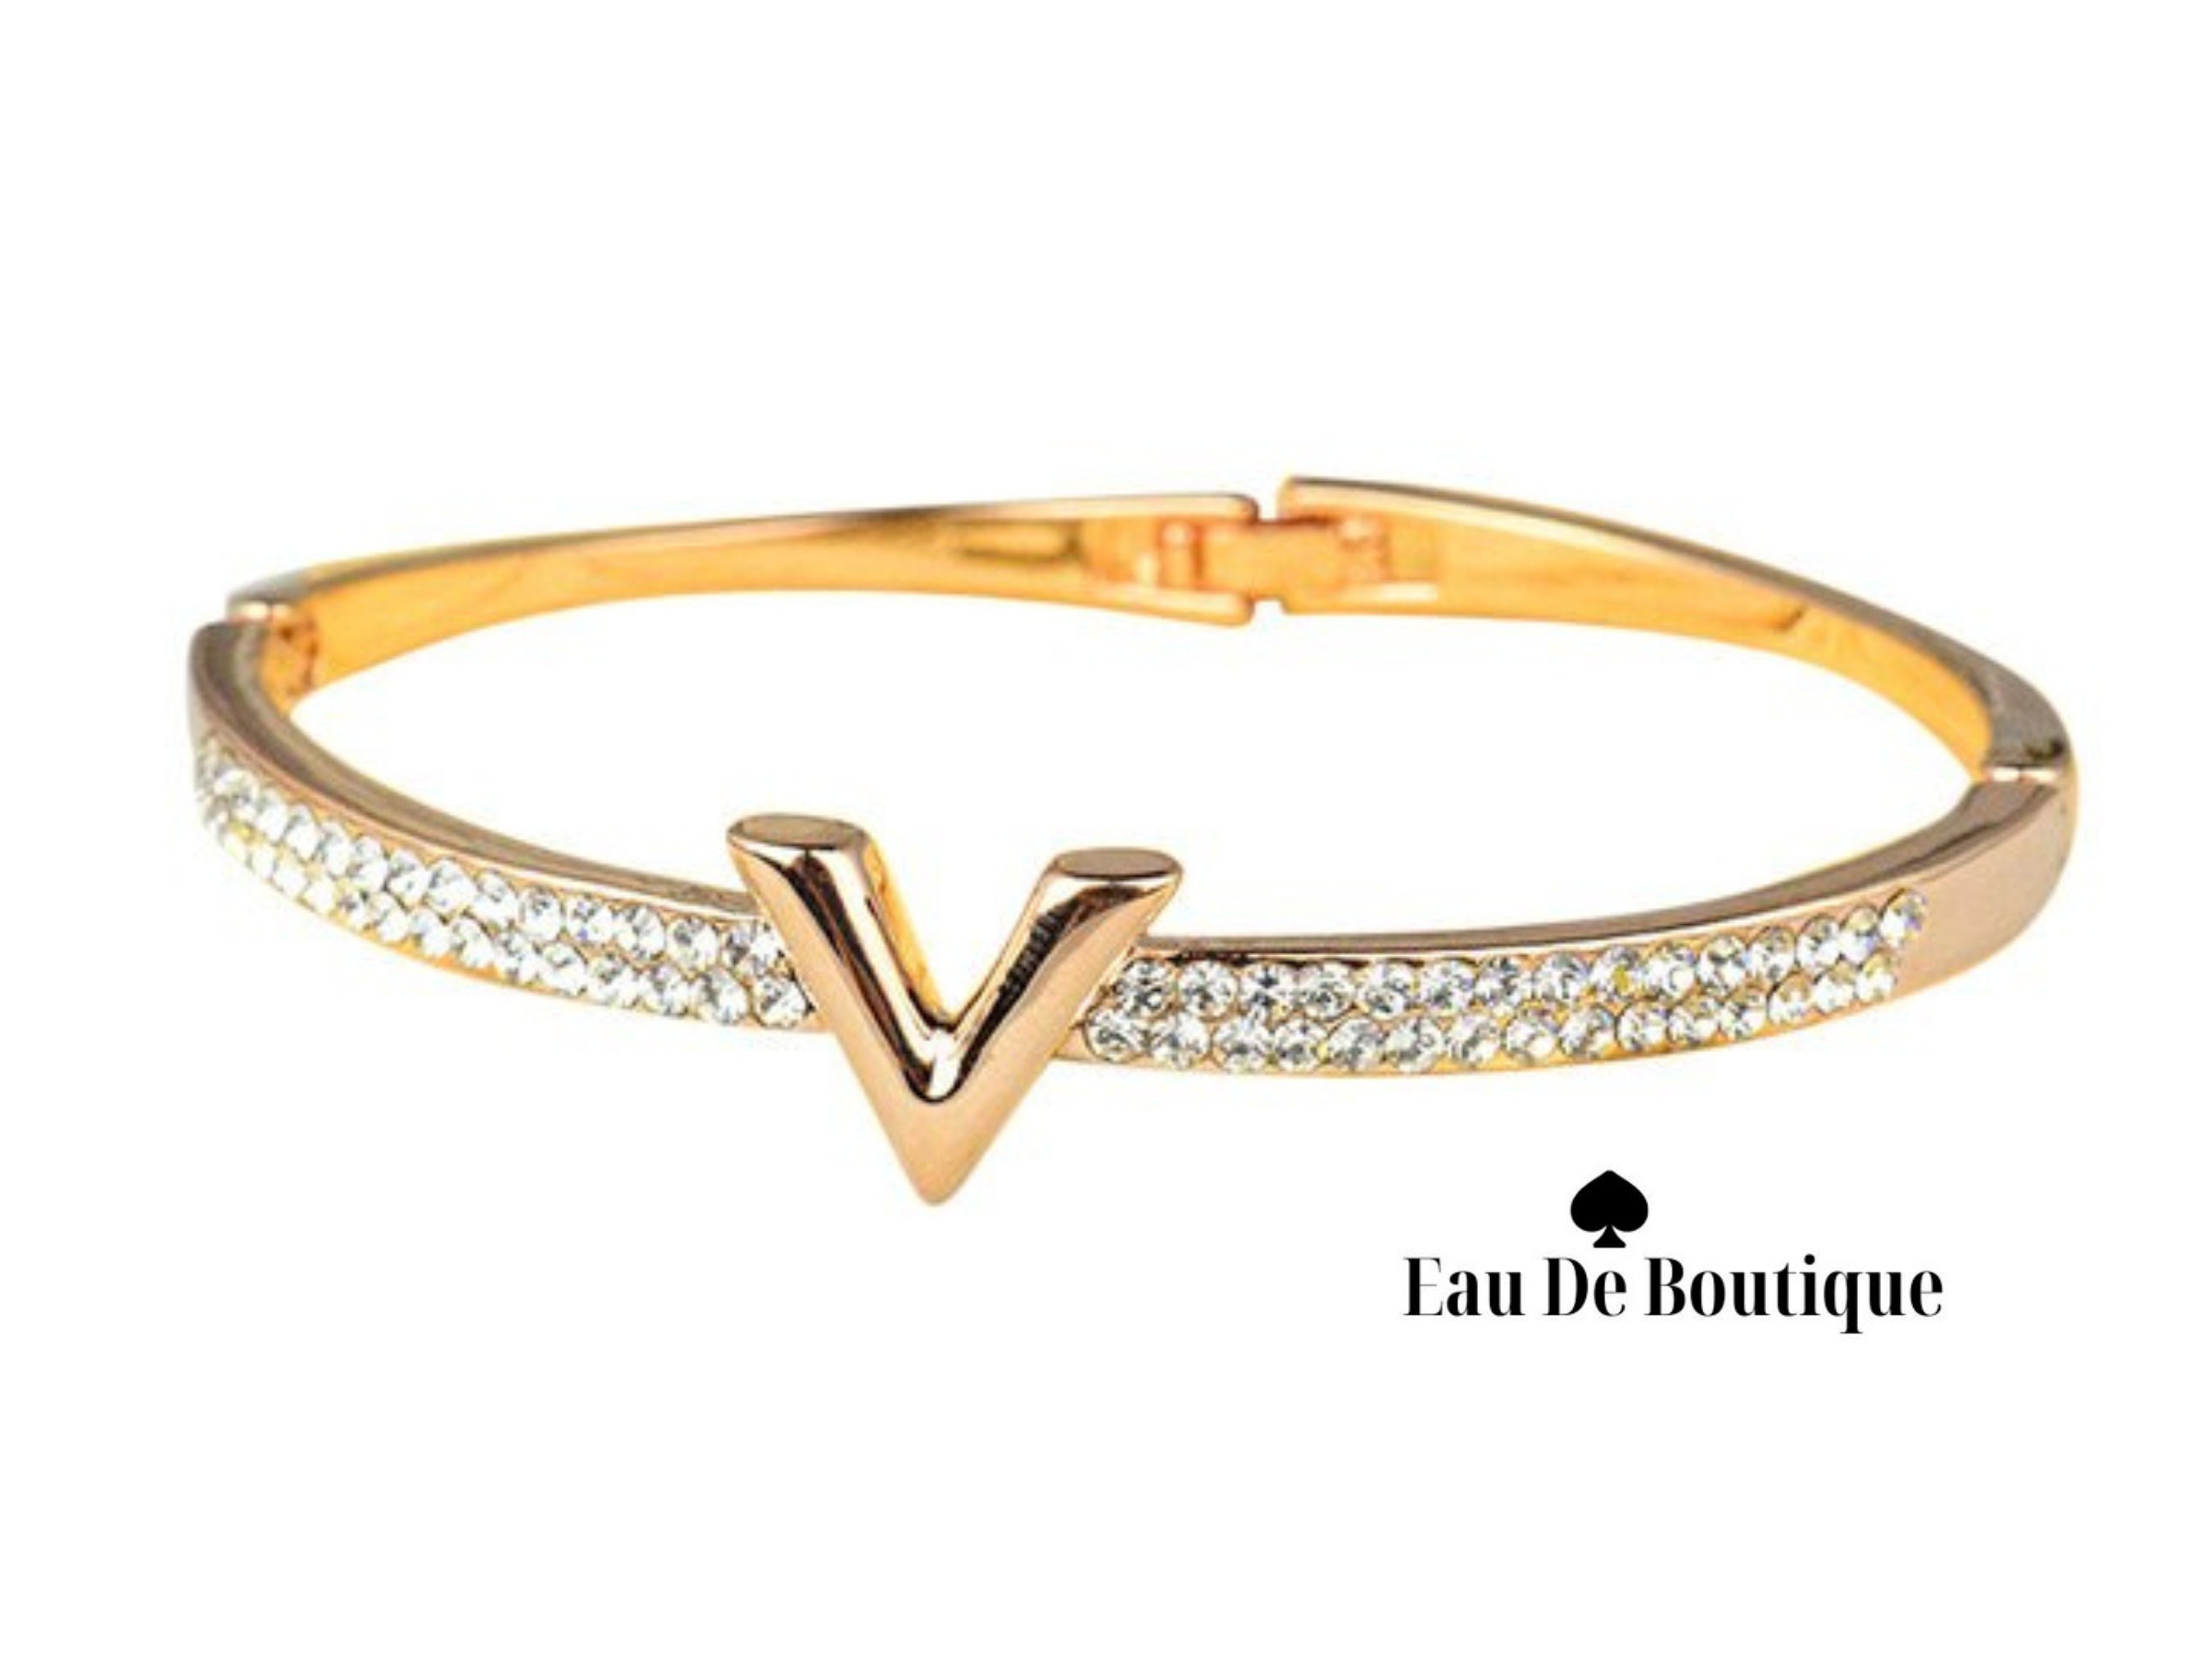 Louis Vuitton 18K Gold Bangle Empreinte LV Sz M